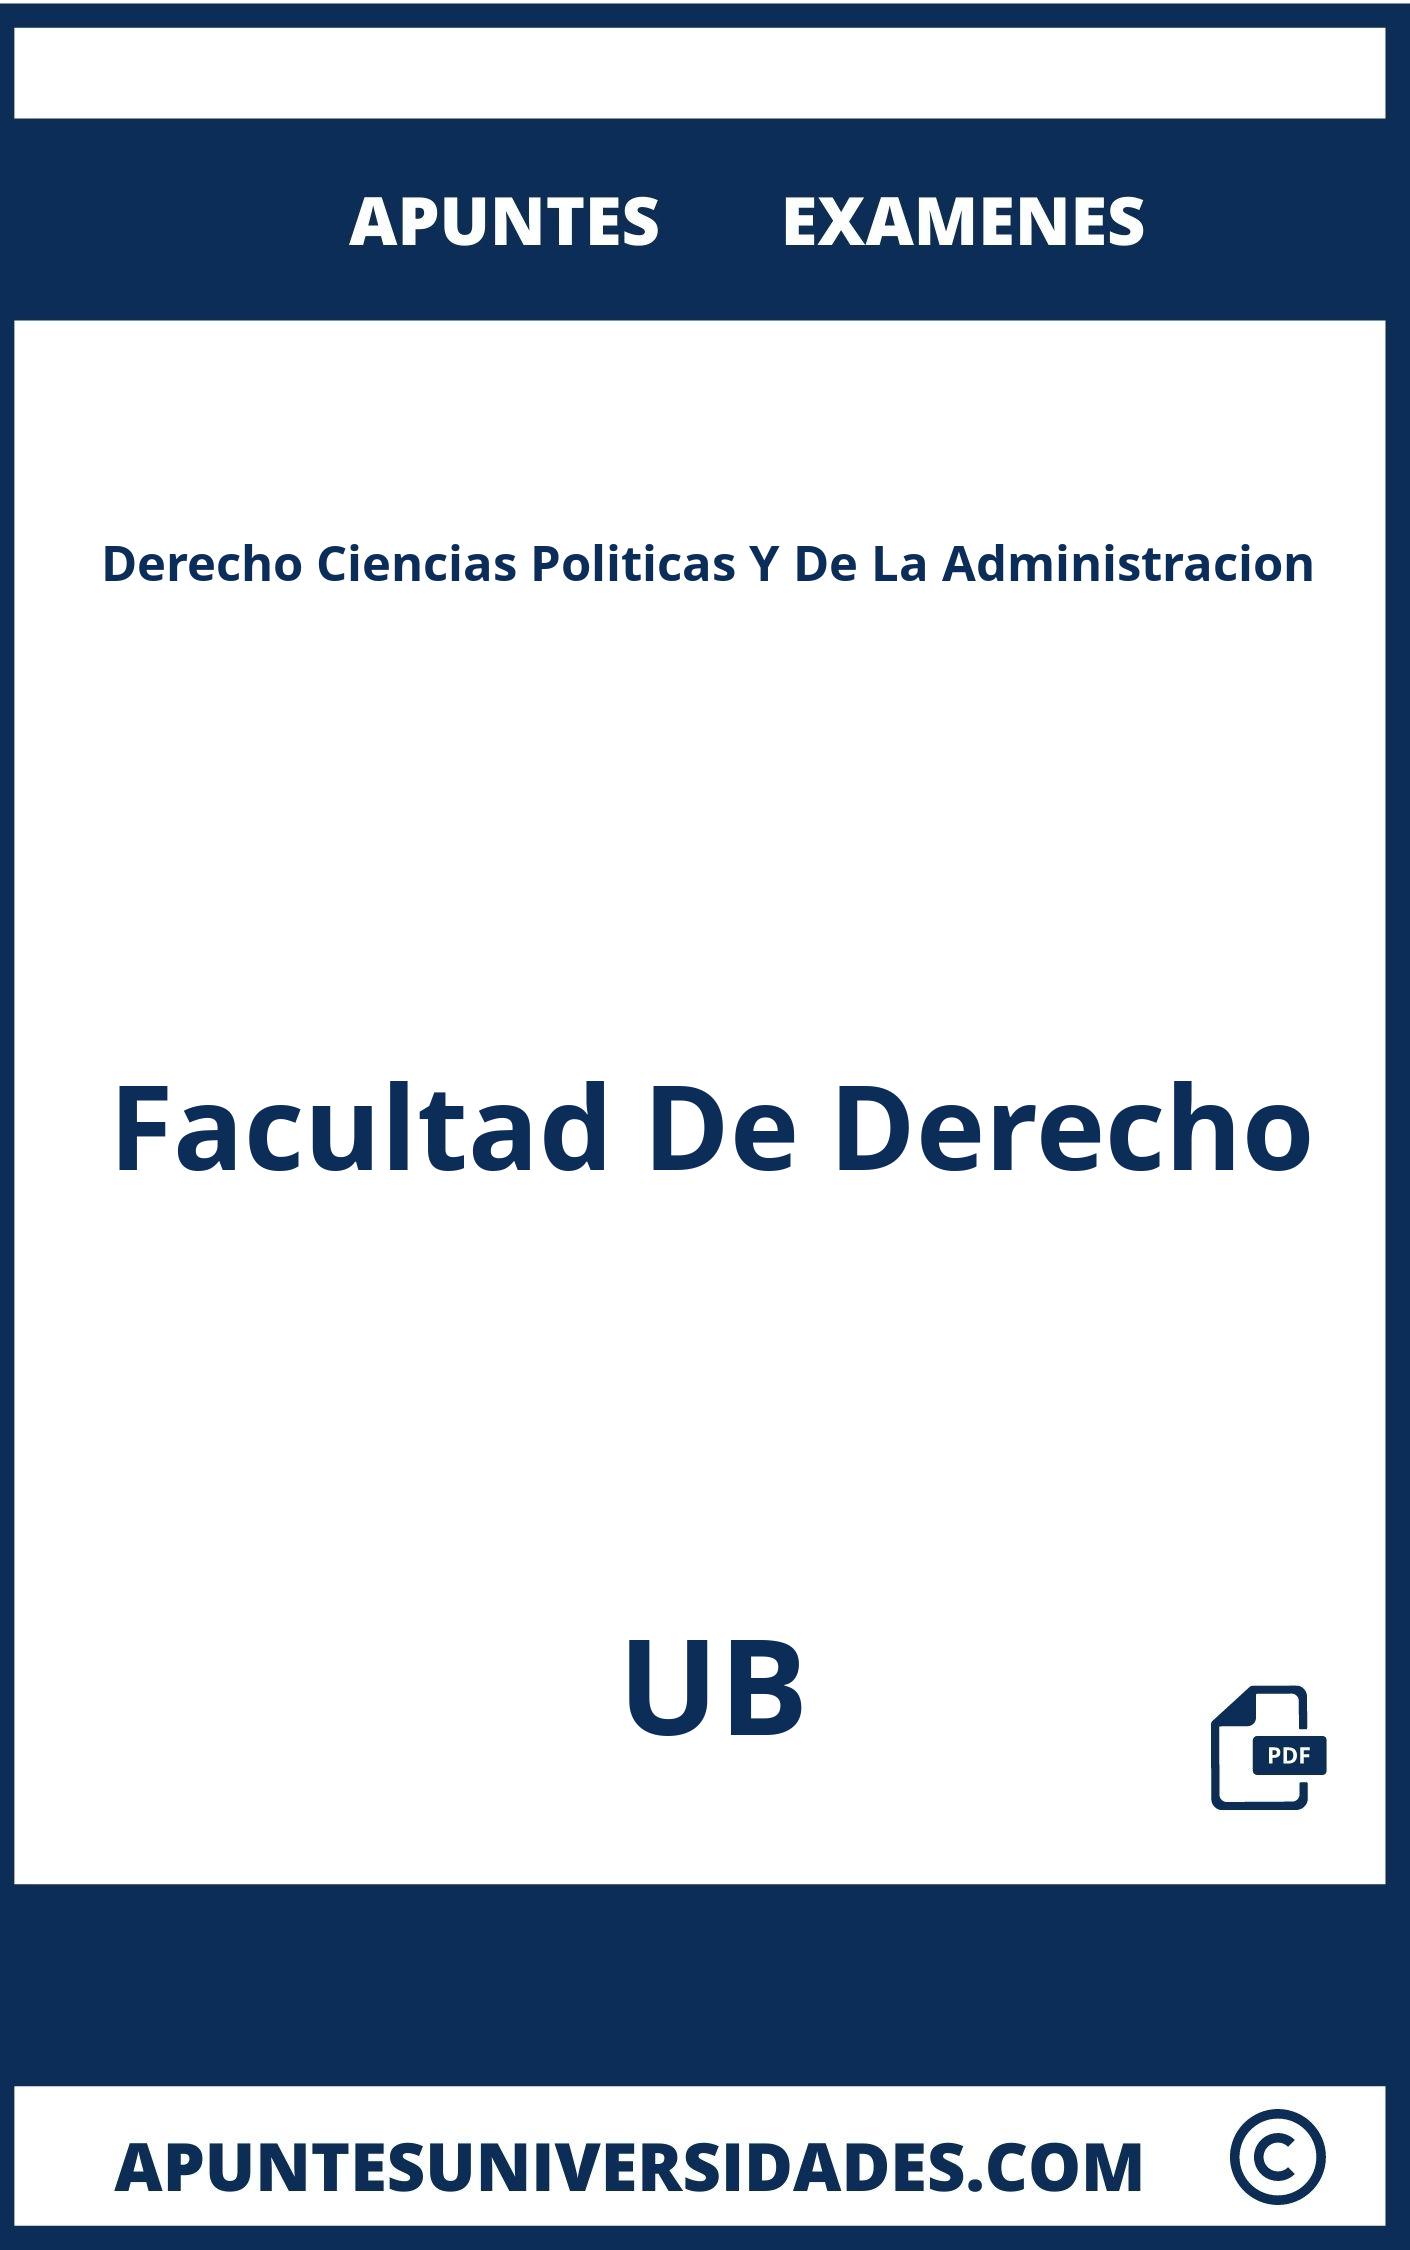 Apuntes y Examenes Derecho Ciencias Politicas Y De La Administracion UB